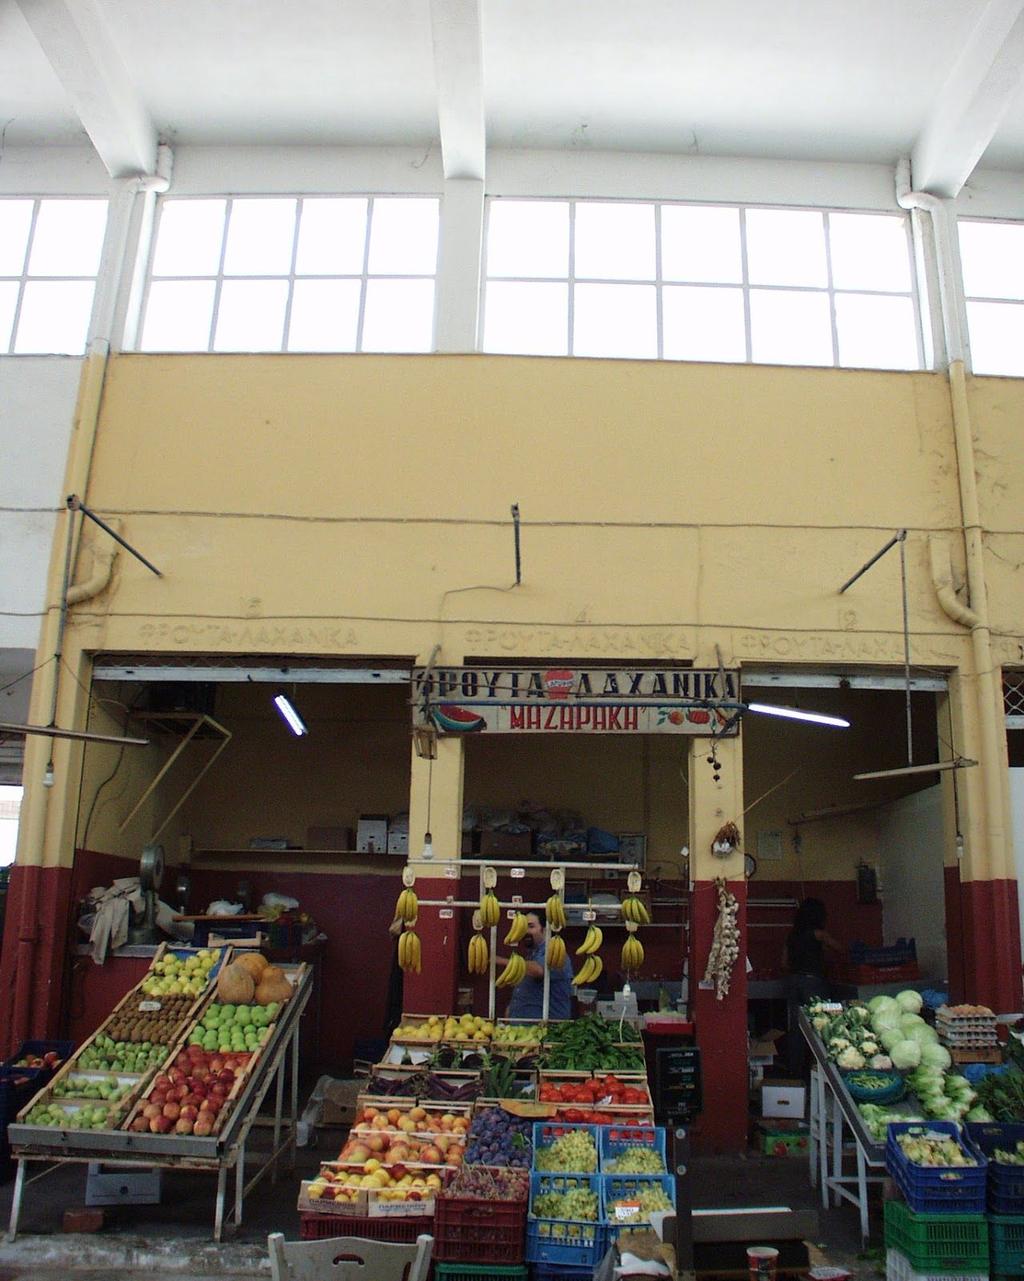 Η ιστορία Η Δημοτική Αγορά της Κυψέλης αποτέλεσε το εμπορικό κέντρο της περιοχής για περισσότερα από 50 χρόνια.